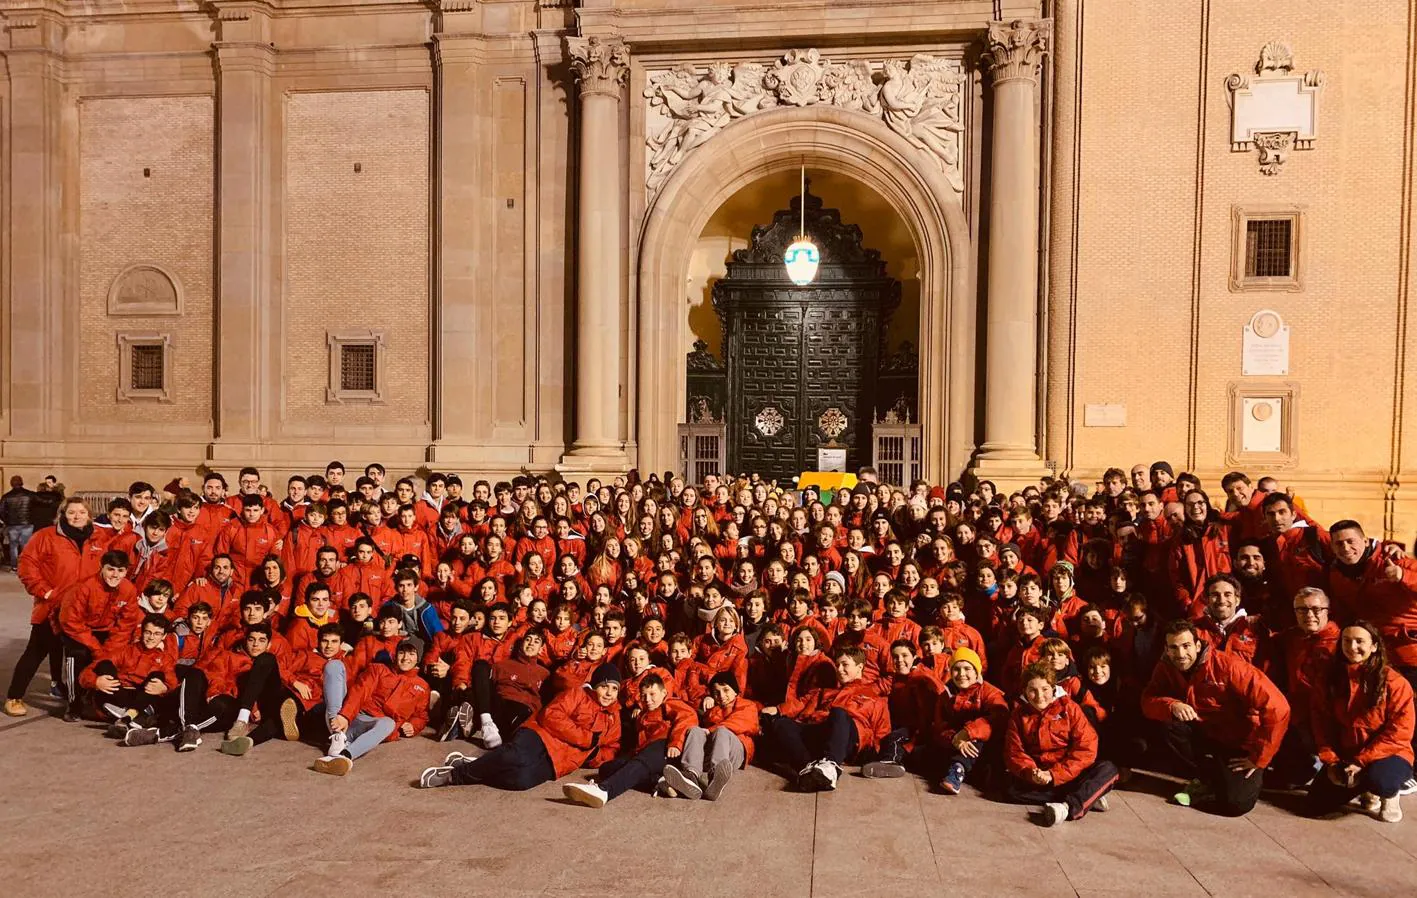 FOTOS: Los alumnos de San Felipe, en la olimpiada marianista de Zaragoza